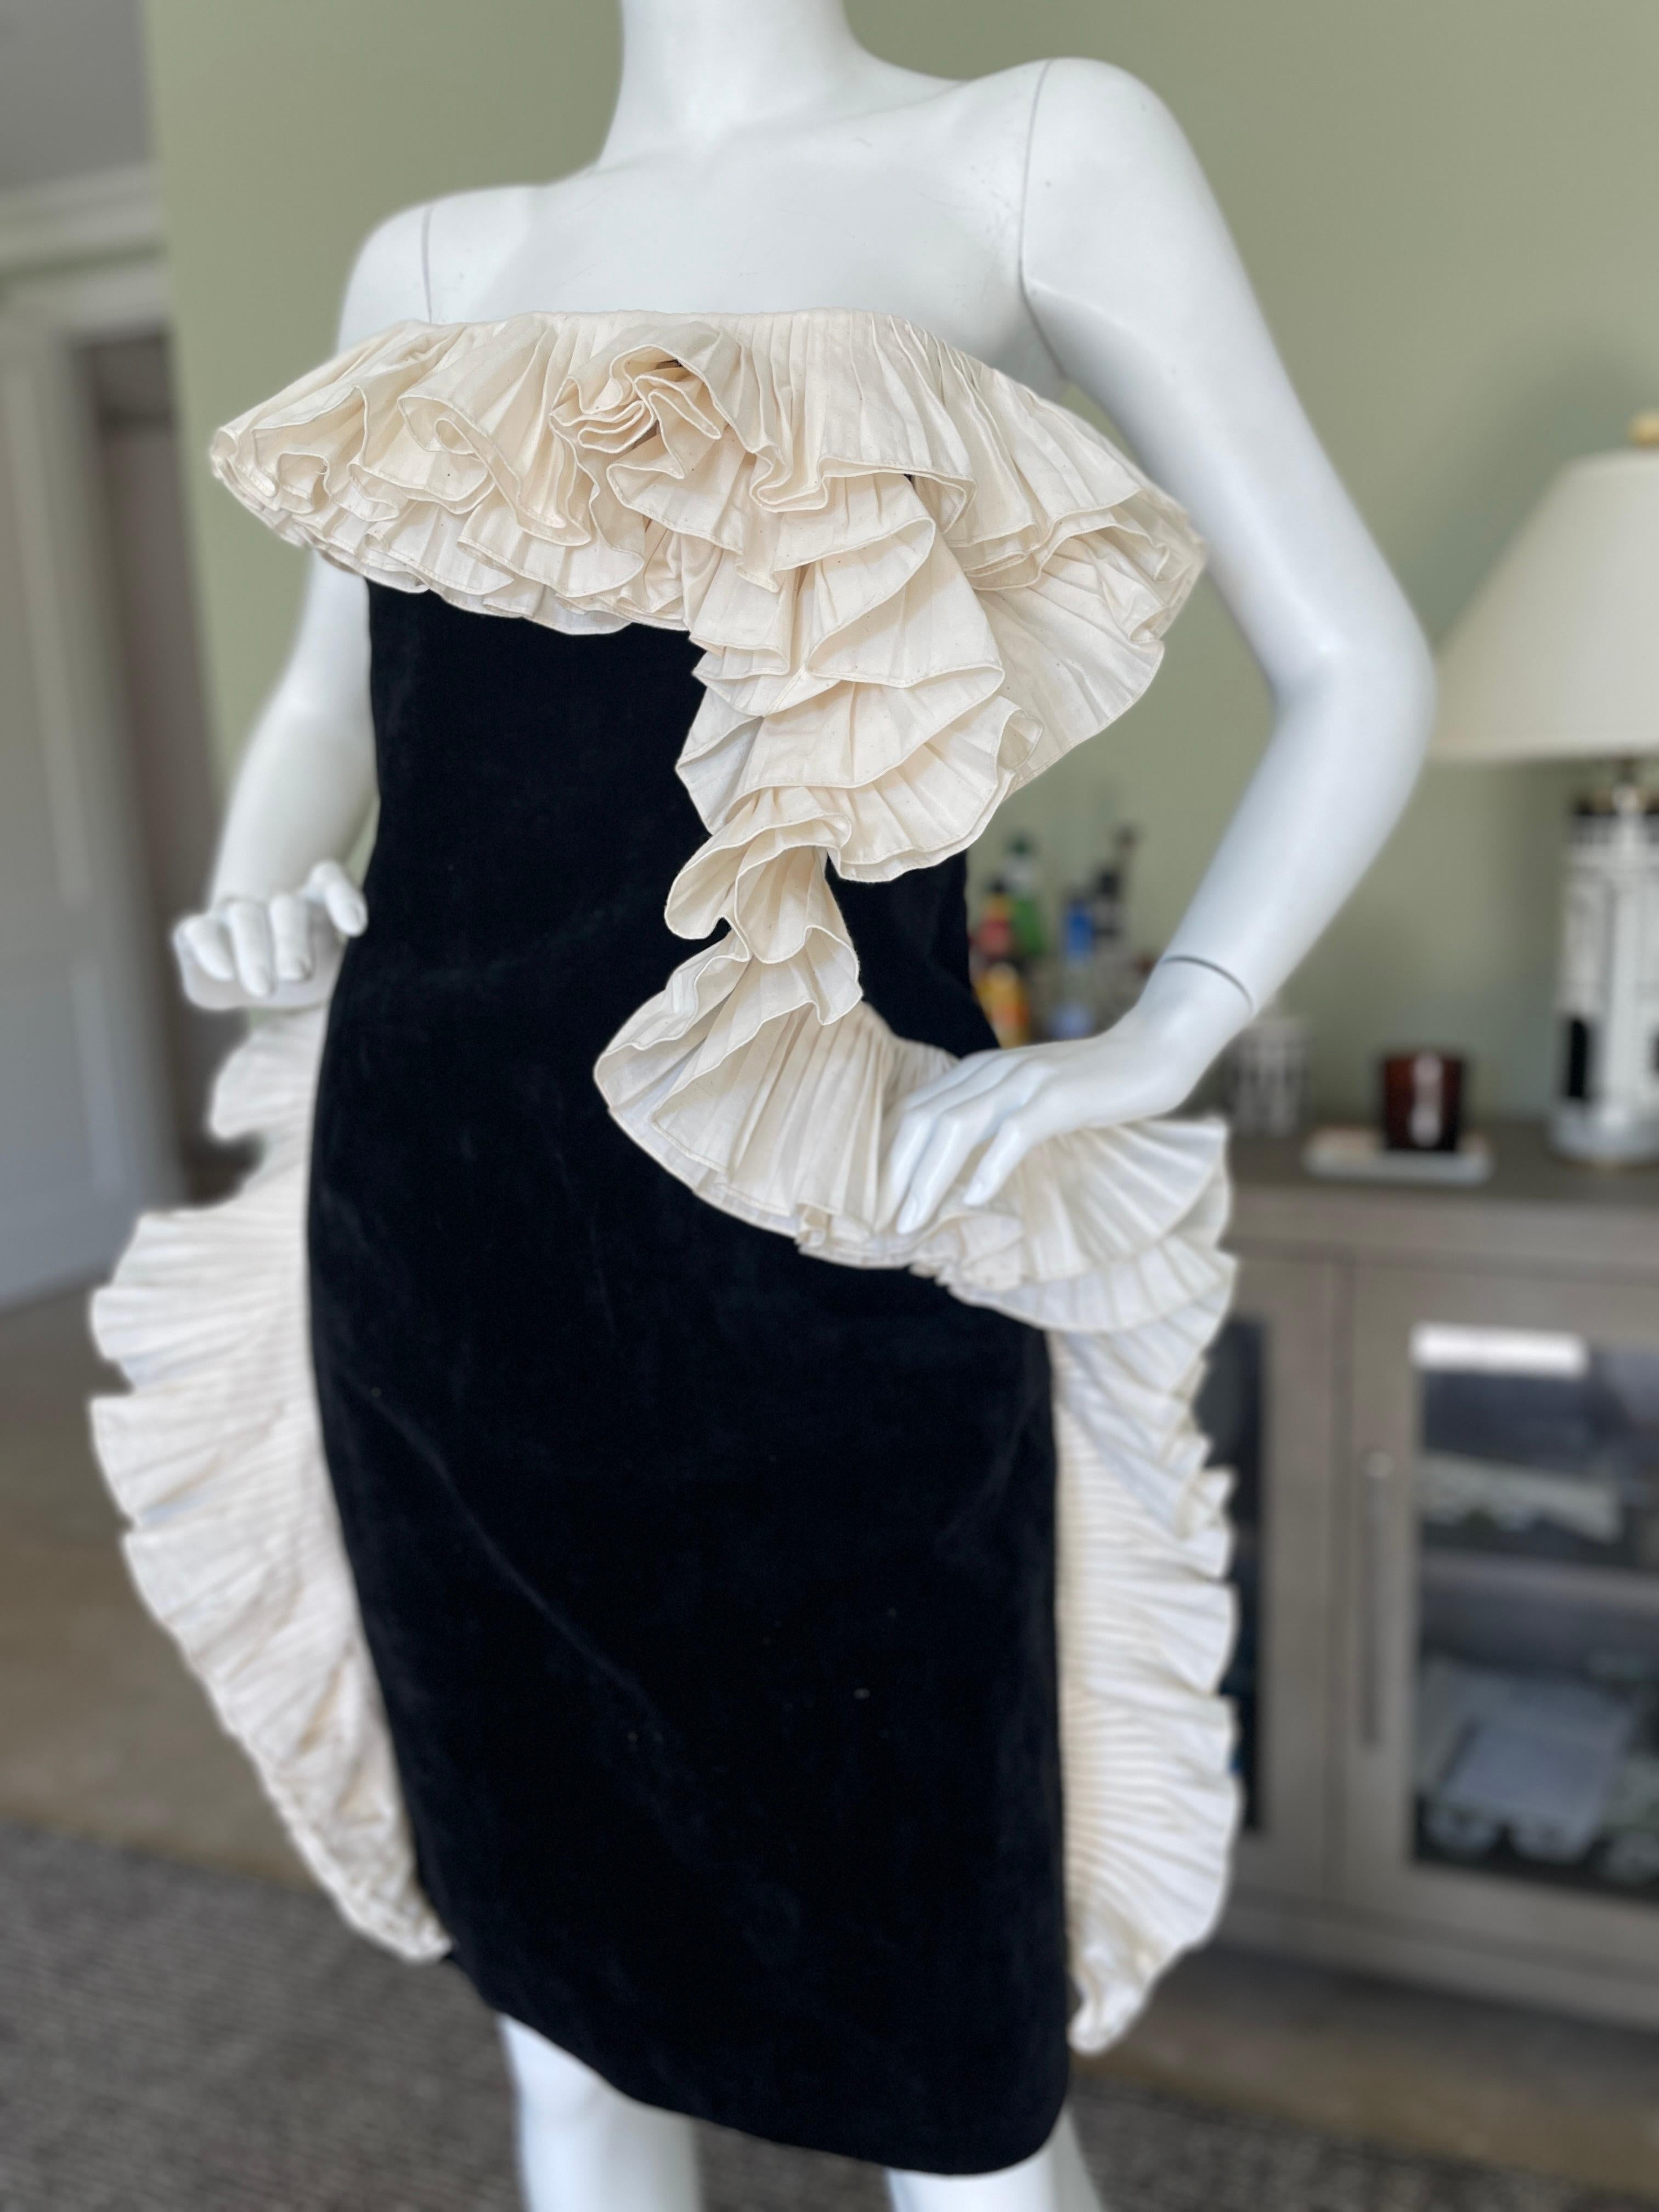 Women's Lanvin by Alber Elbaz Black Velvet Dress w Dramatic White Ruffle from Fall 2012 For Sale